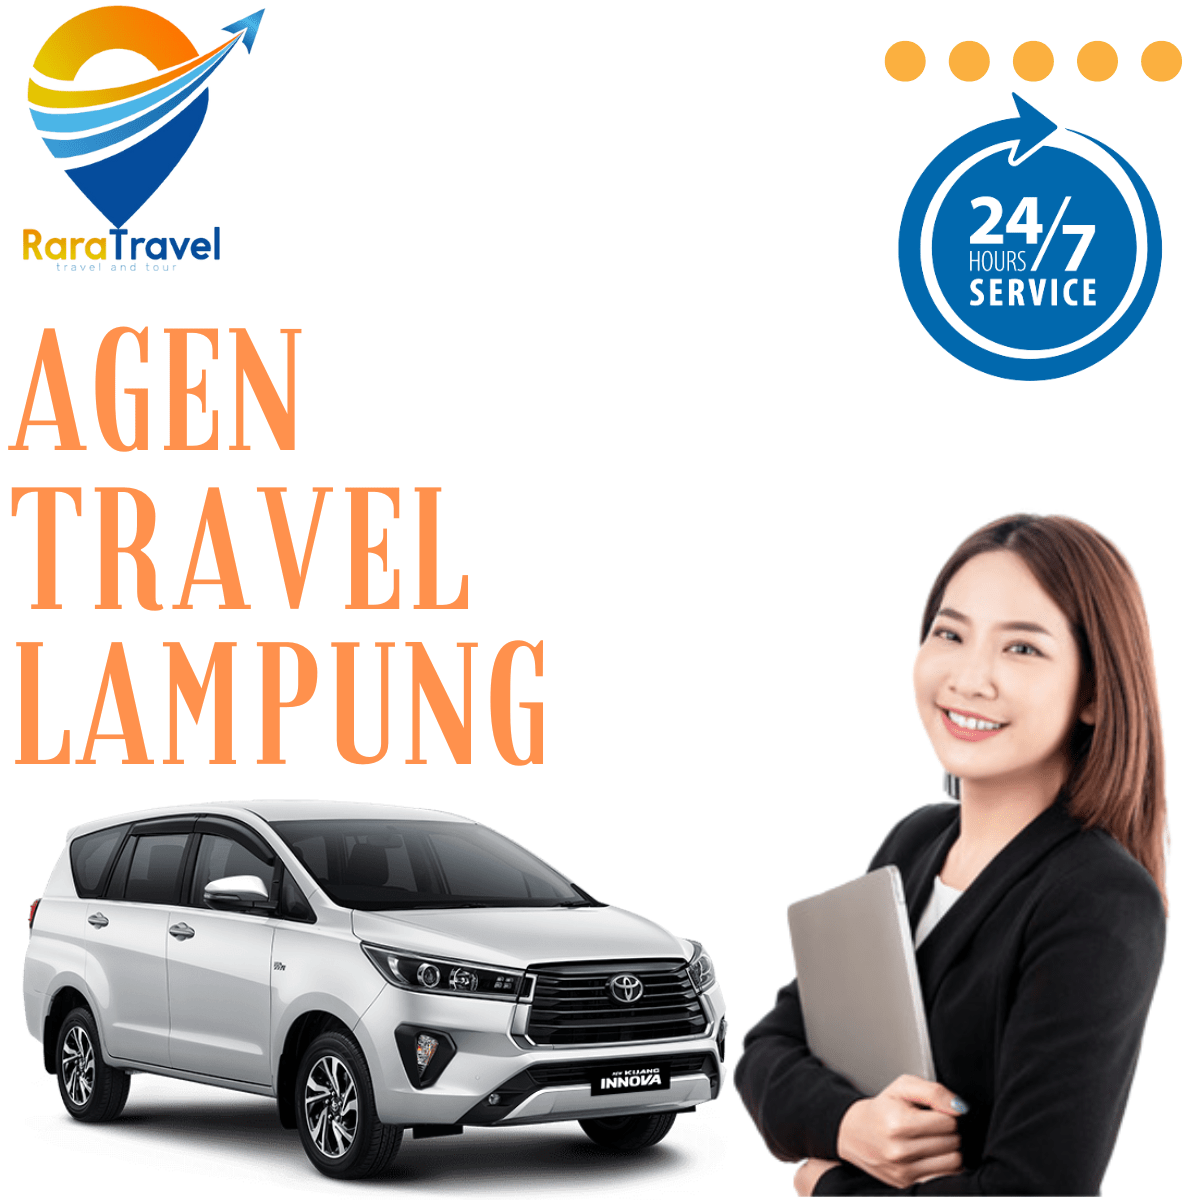 Agen Travel Bandar Lampung Hiace: Harga Tiket, Jadwal dan Rute